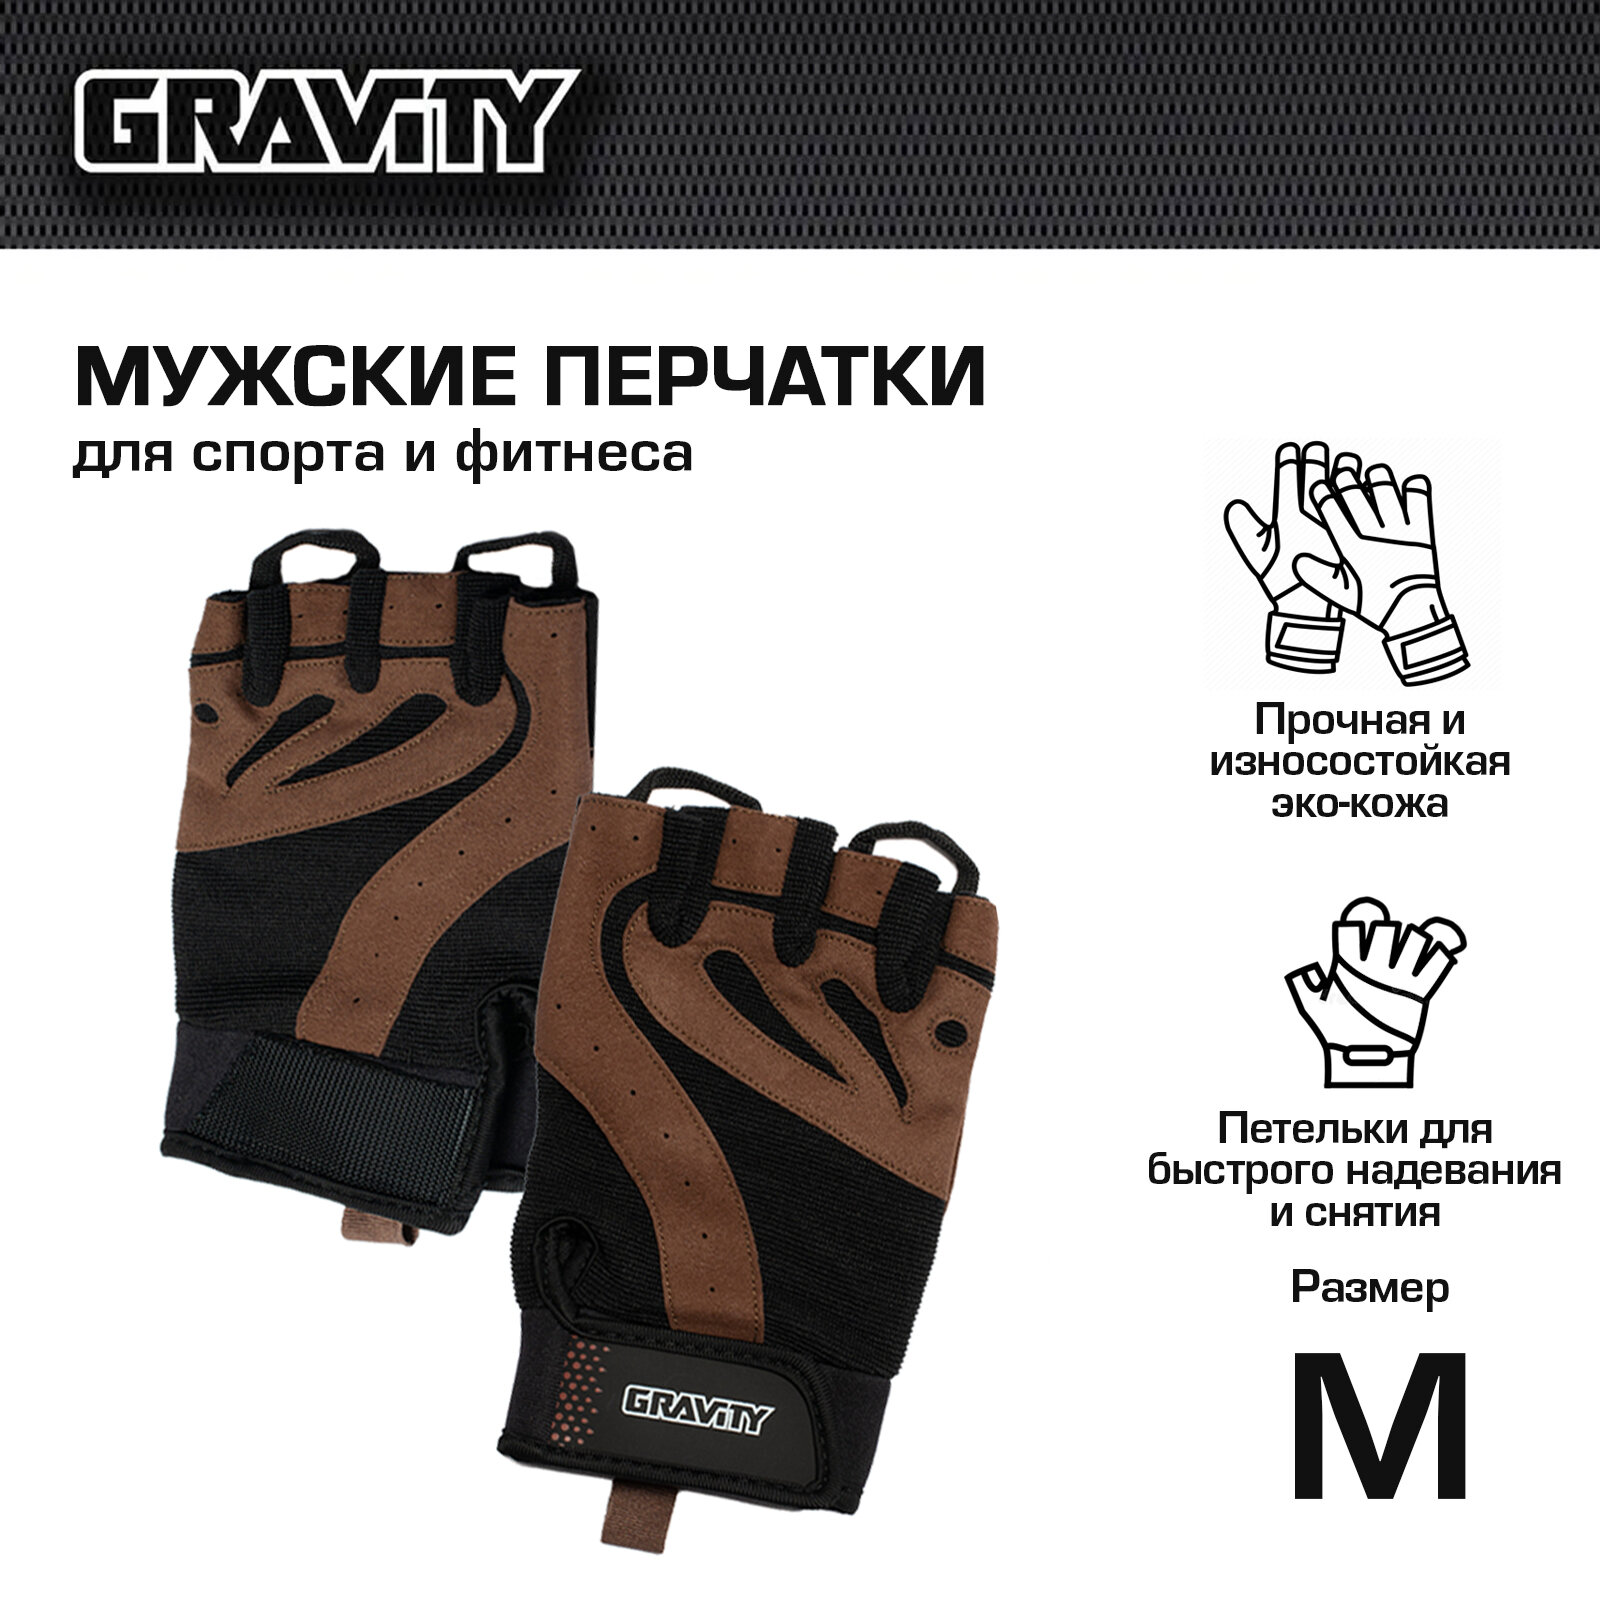 Мужские перчатки для фитнеса Gravity Gel Performer черно-коричневые